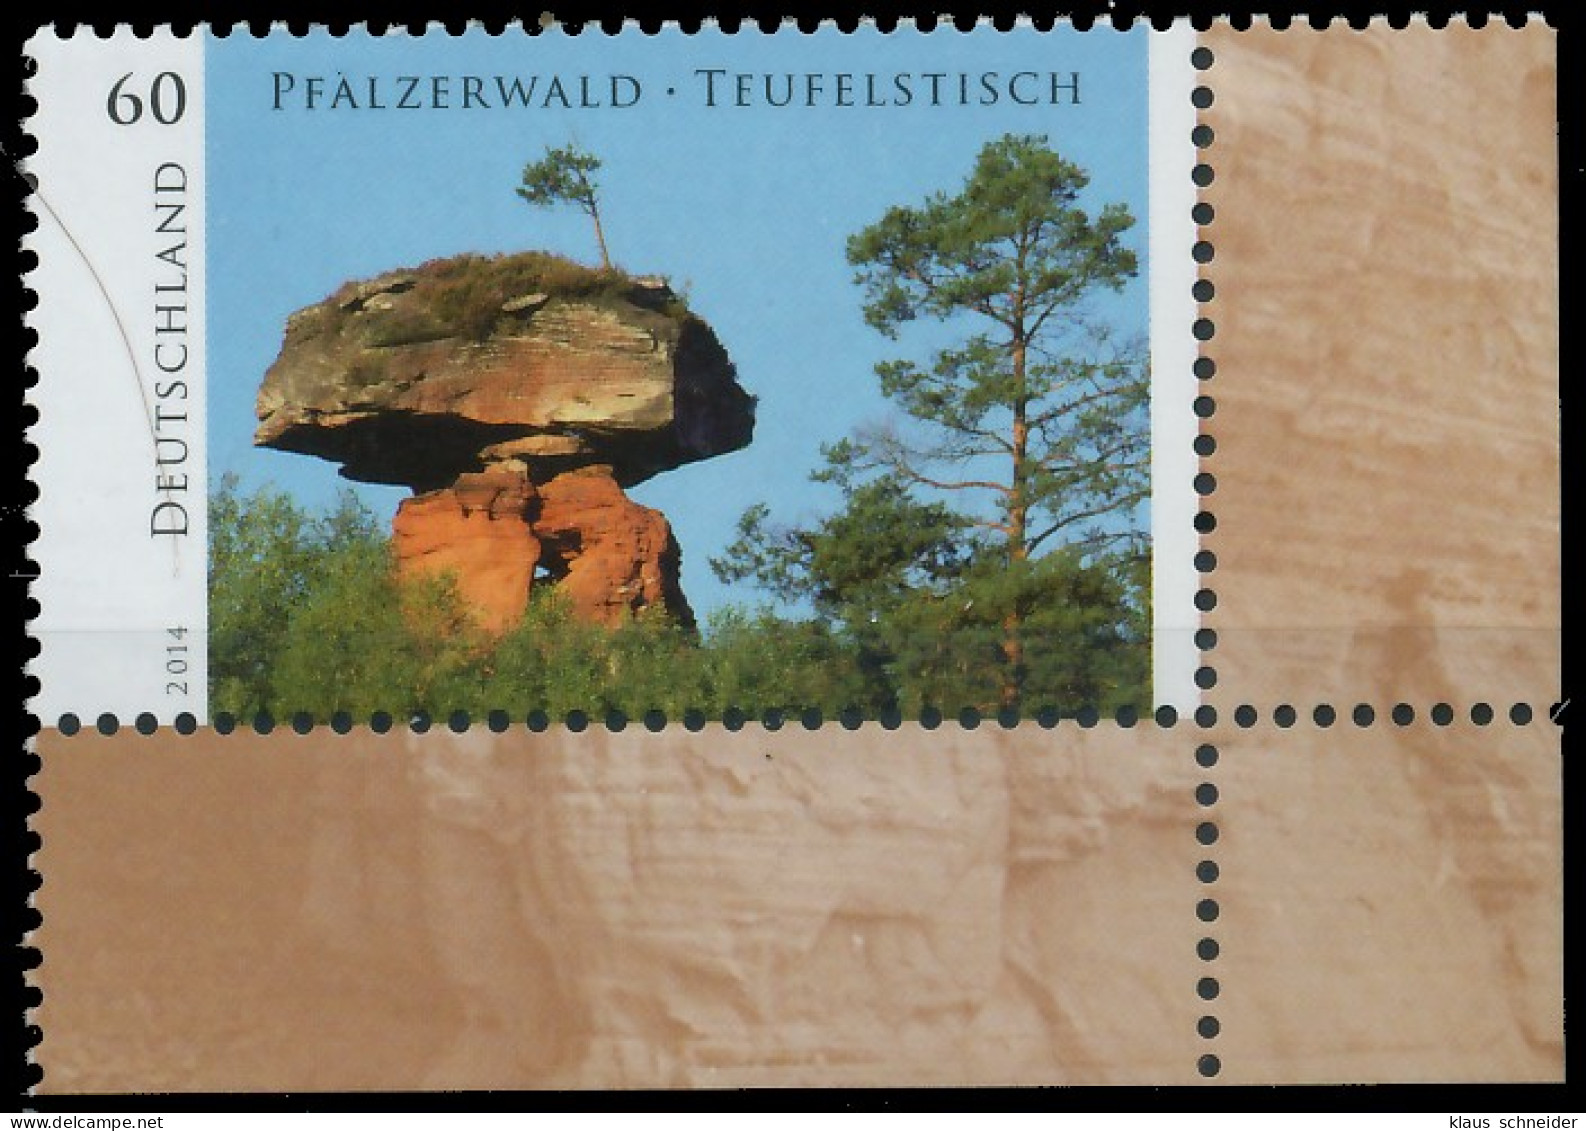 BRD BUND 2014 Nr 3060 Postfrisch ECKE-URE X33B28A - Unused Stamps